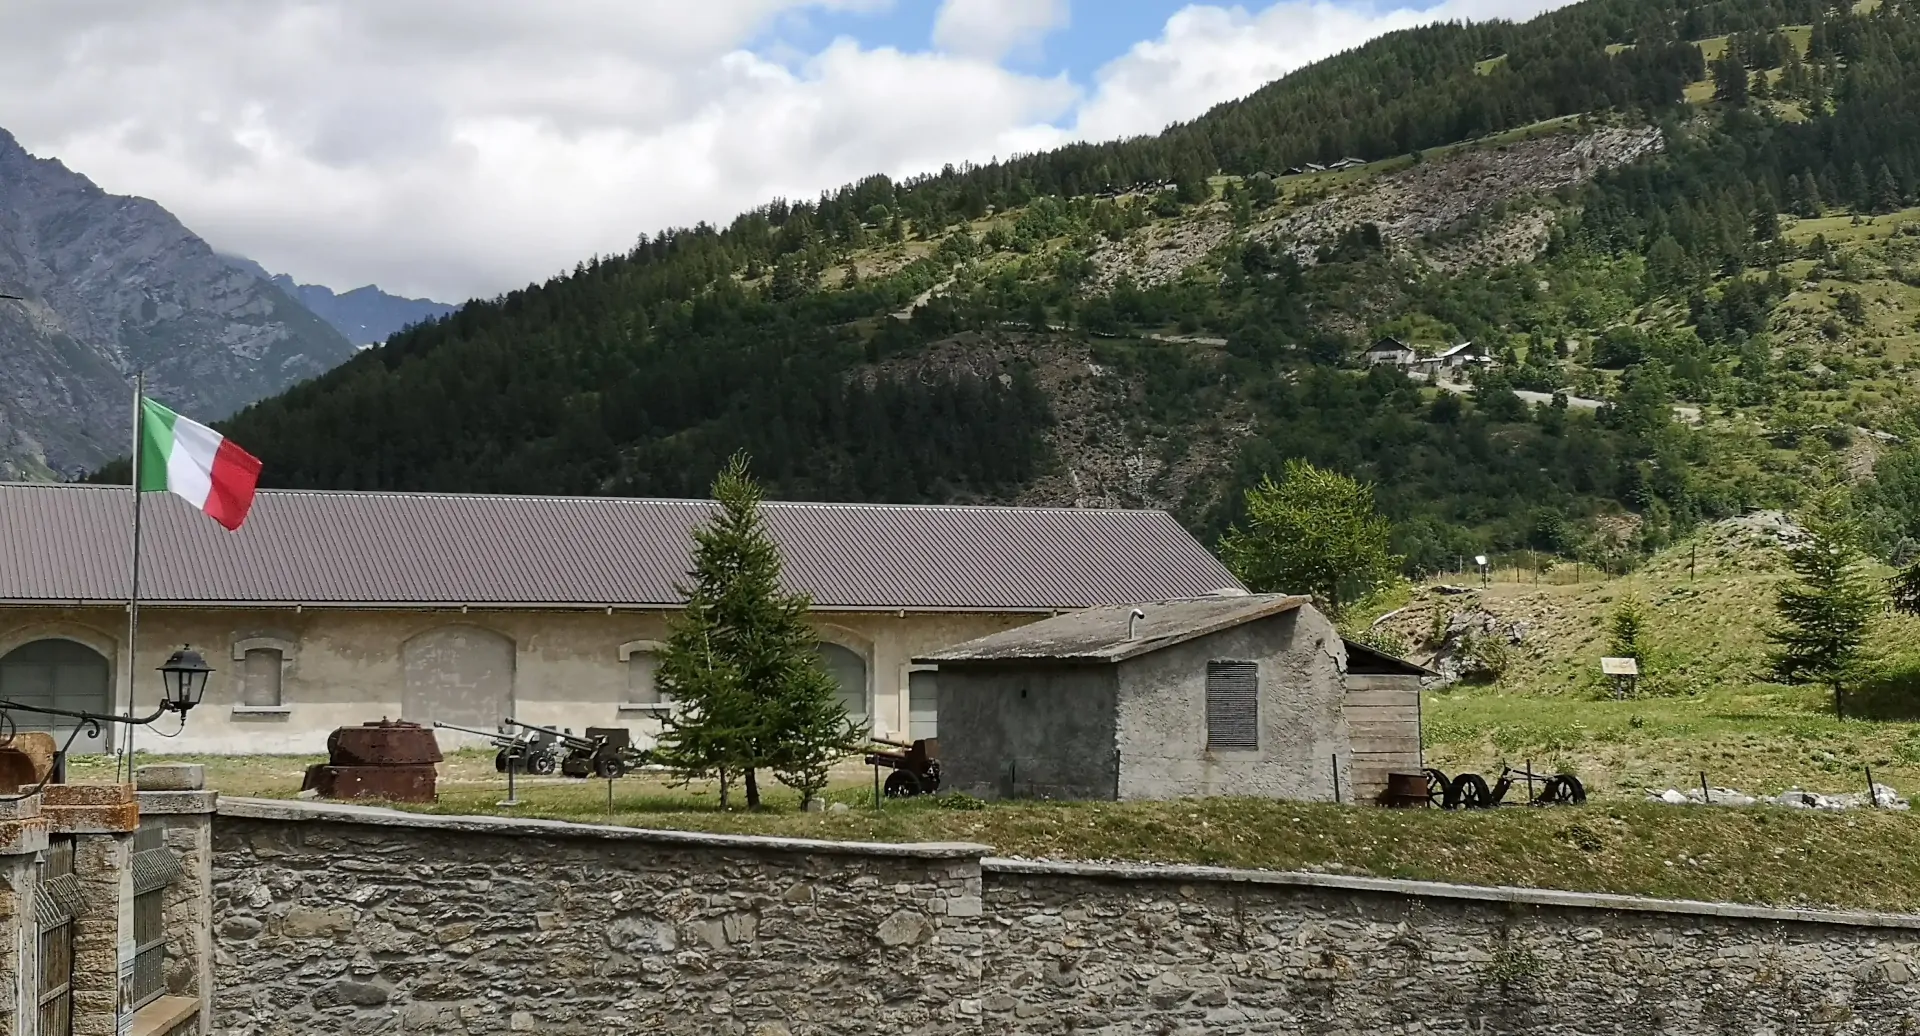 VLog - Estate 2020 - La via du viò - Forte Bramafam - Bardonecchia (TO)